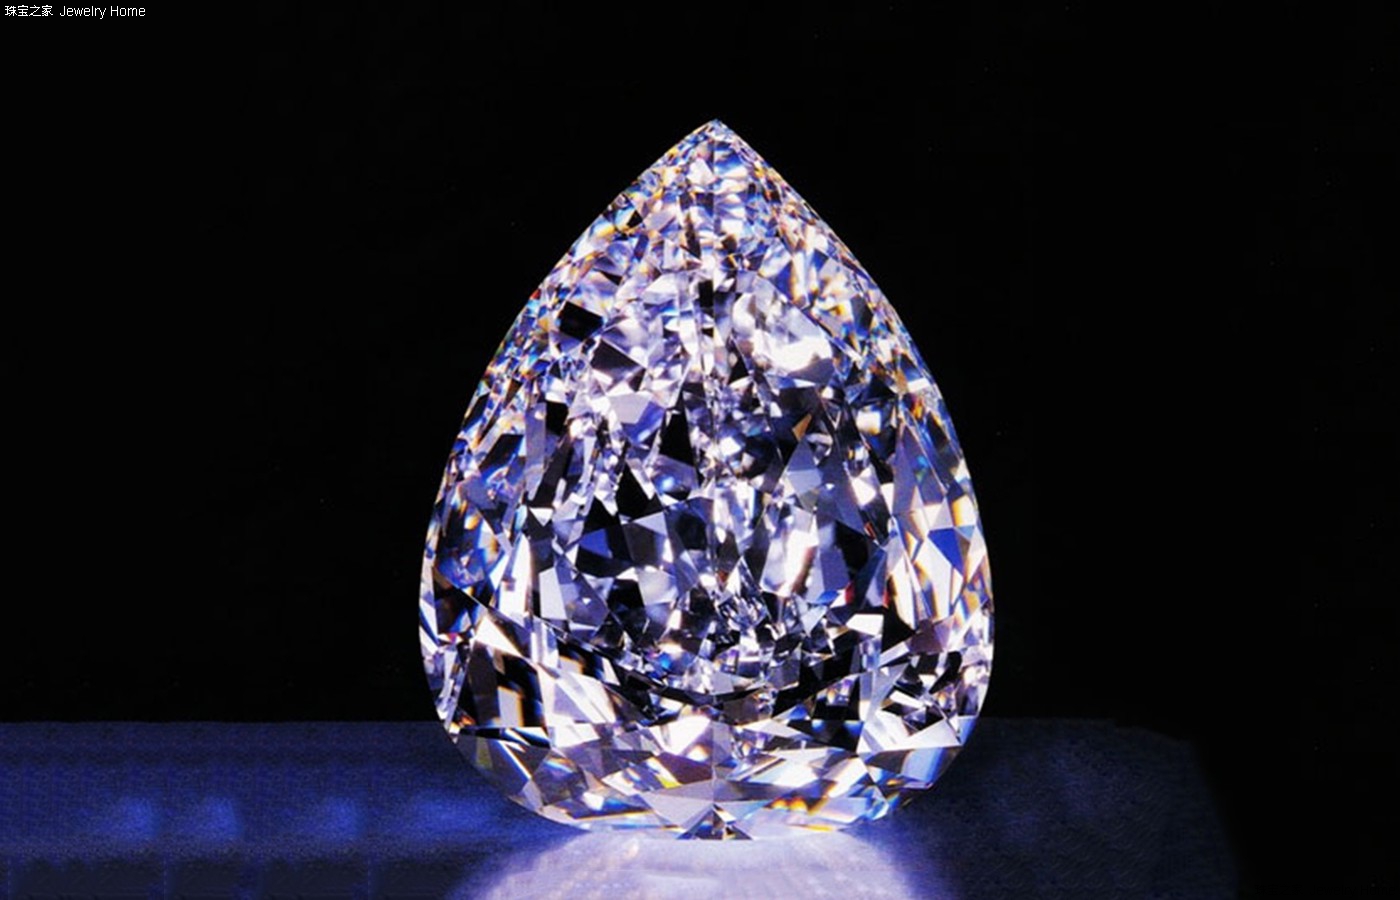 钻石等级划分标准 钻石等级对照表图片详解 - 知乎